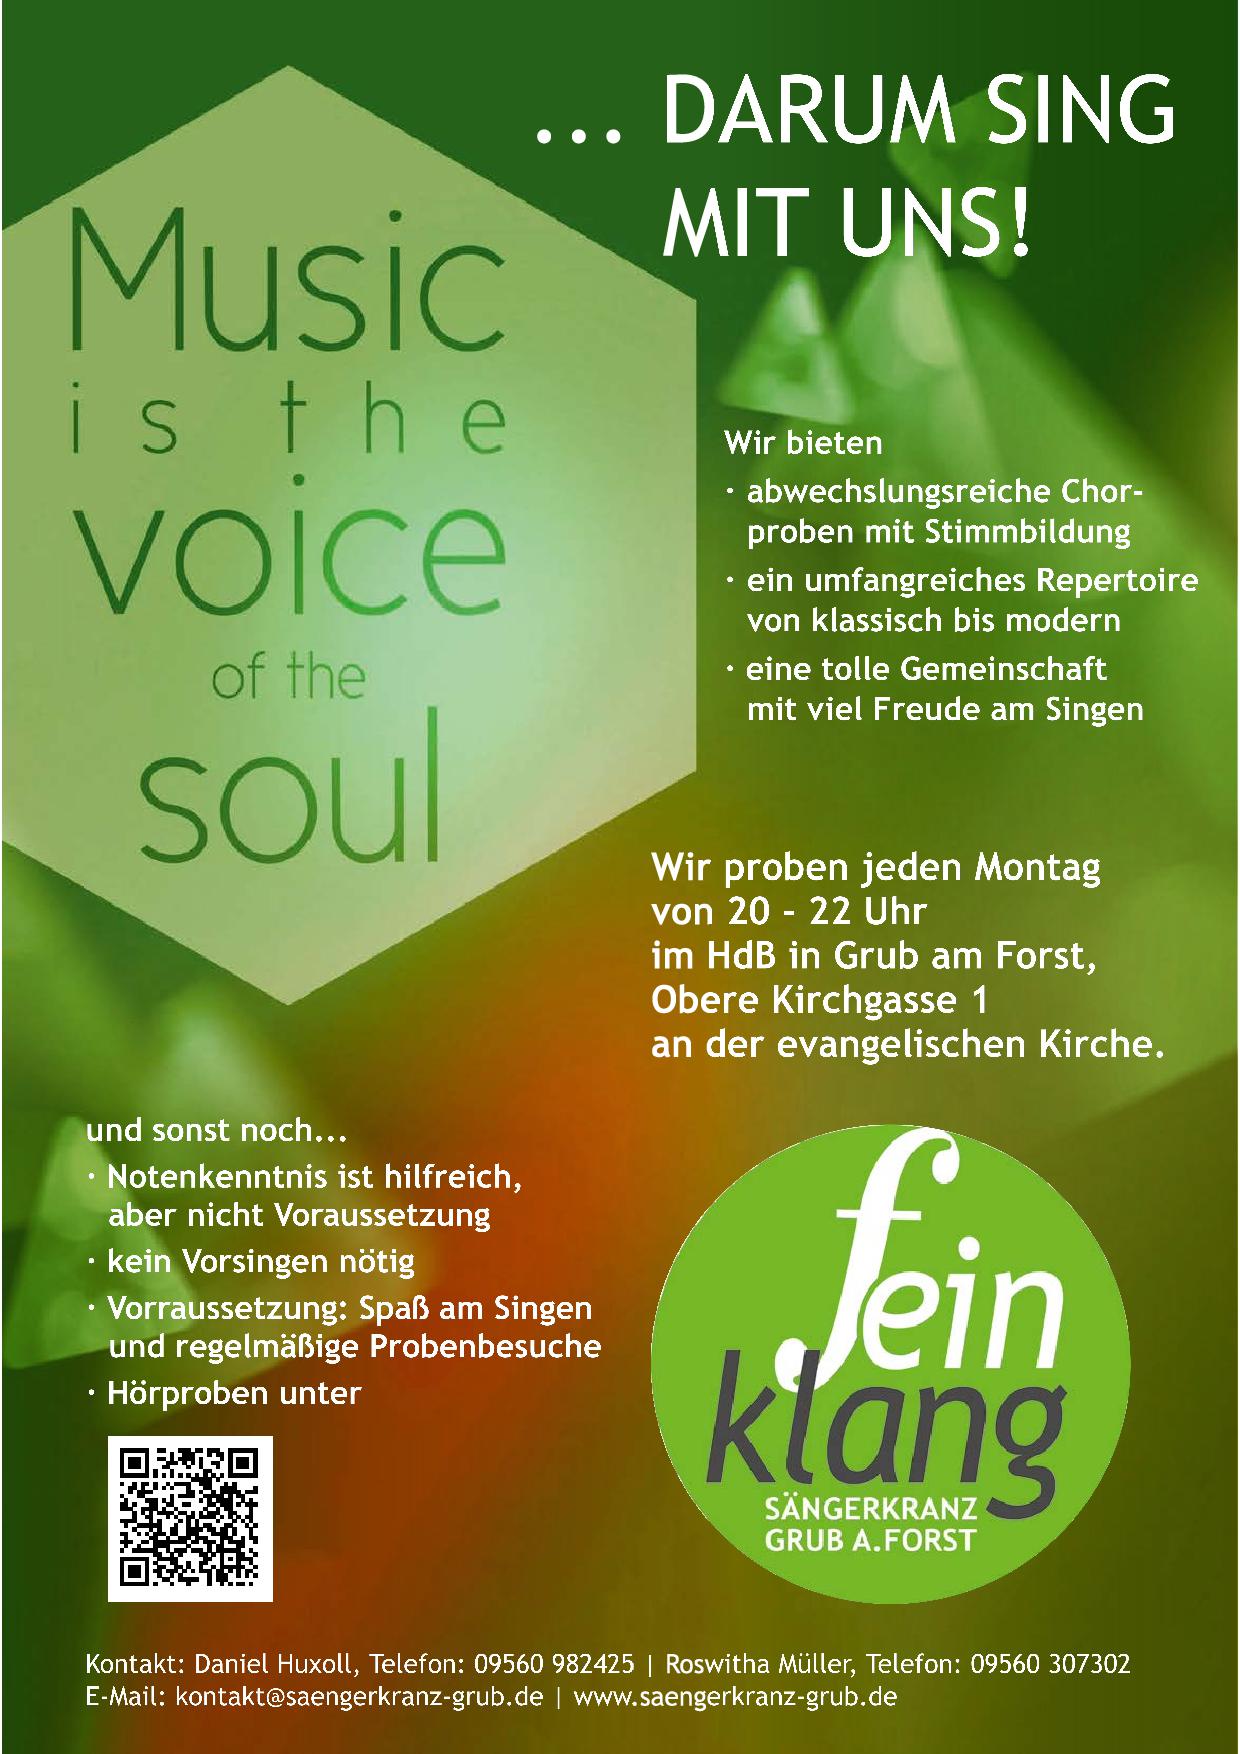 Flyer "Darum sing mit uns"